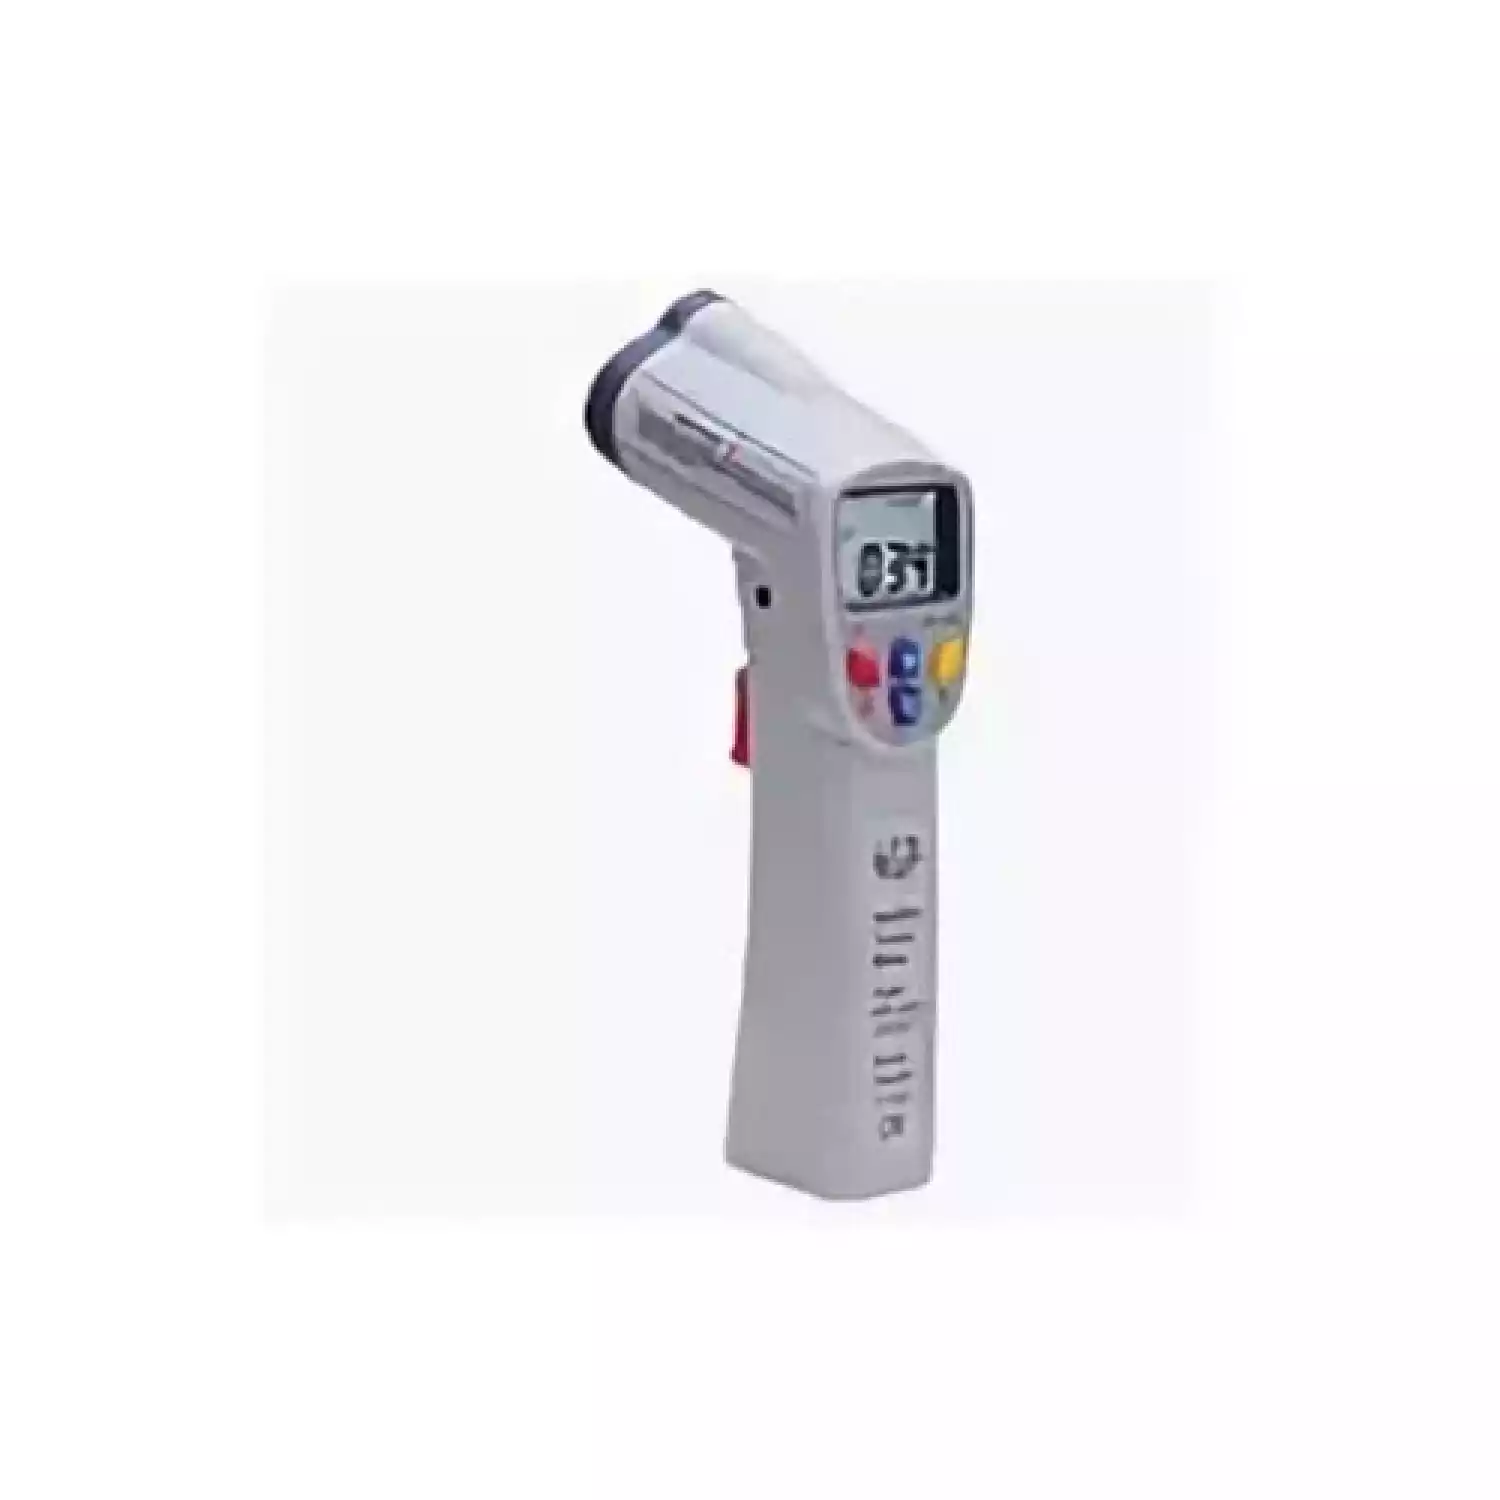 Дистанционный измеритель температуры (пирометр) CEM DT-8811 - 1